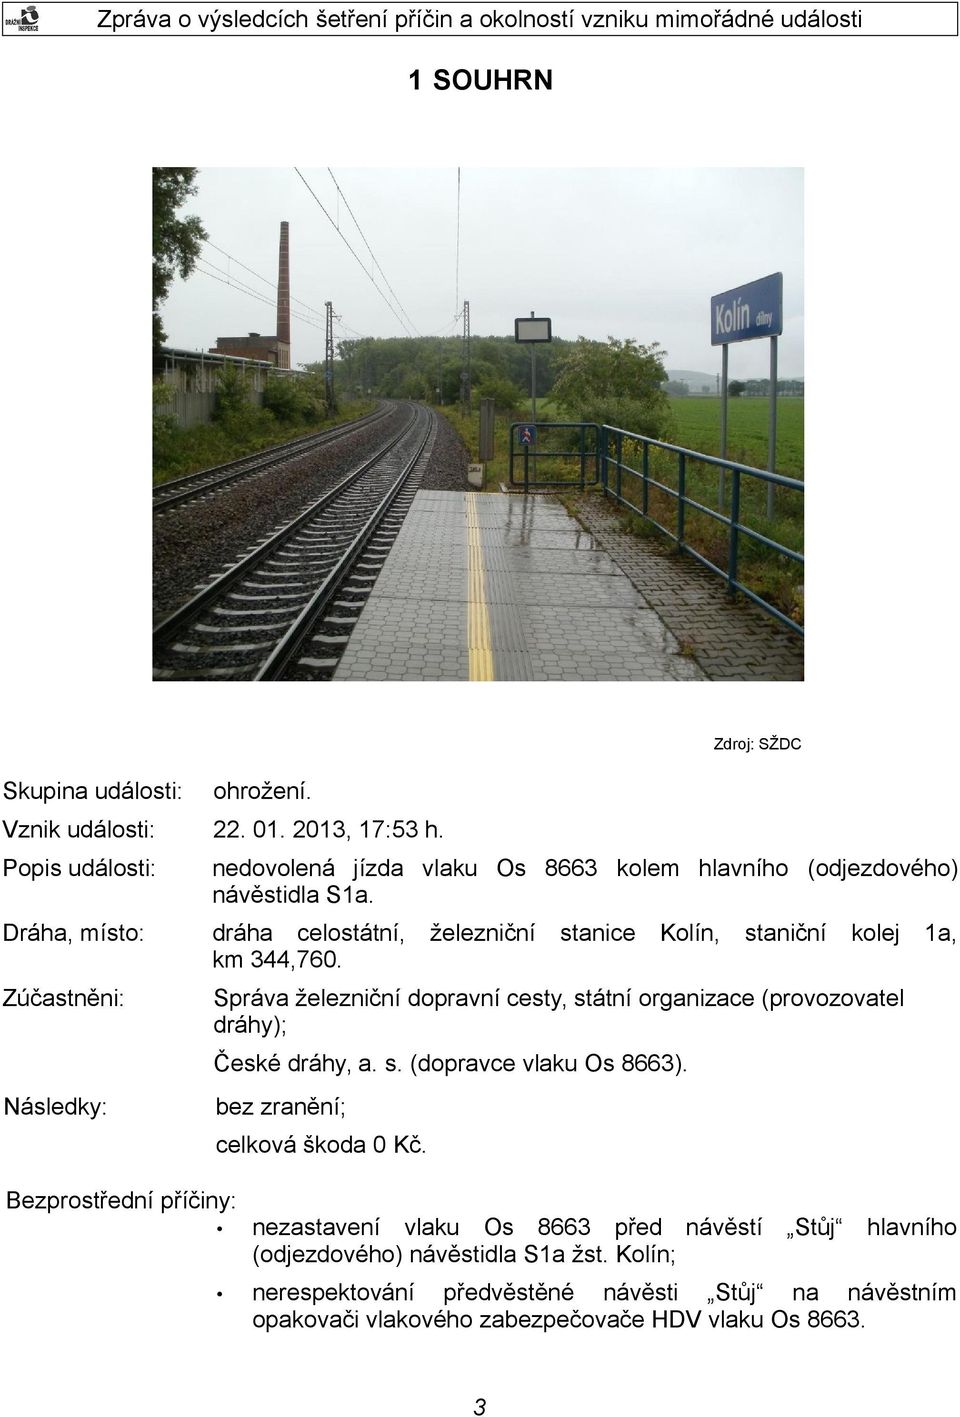 Zúčastněni: Správa železniční dopravní cesty, státní organizace (provozovatel dráhy); železniční stanice Kolín, staniční kolej 1a, České dráhy, a. s. (dopravce vlaku Os 8663).